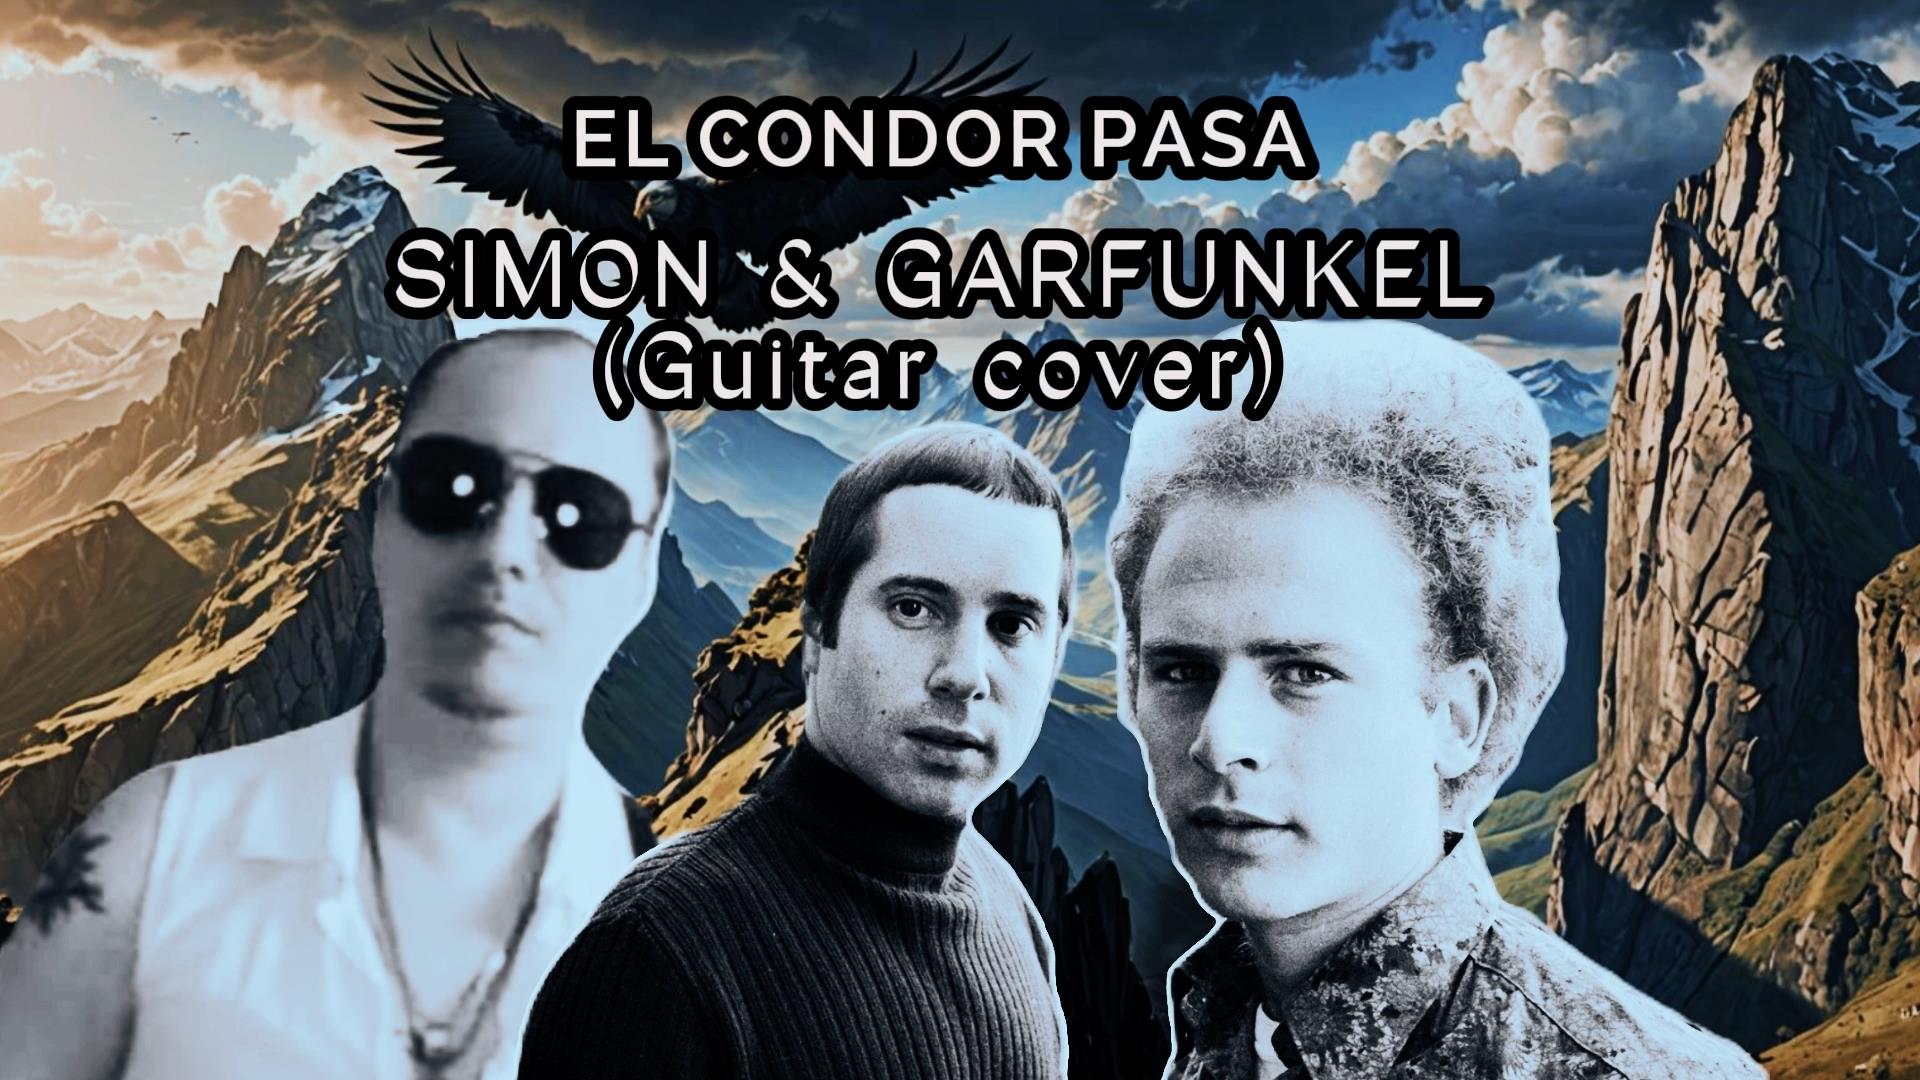 SIMON & GARFUNKEL - EL CONDOR PASA (Guitar cover)